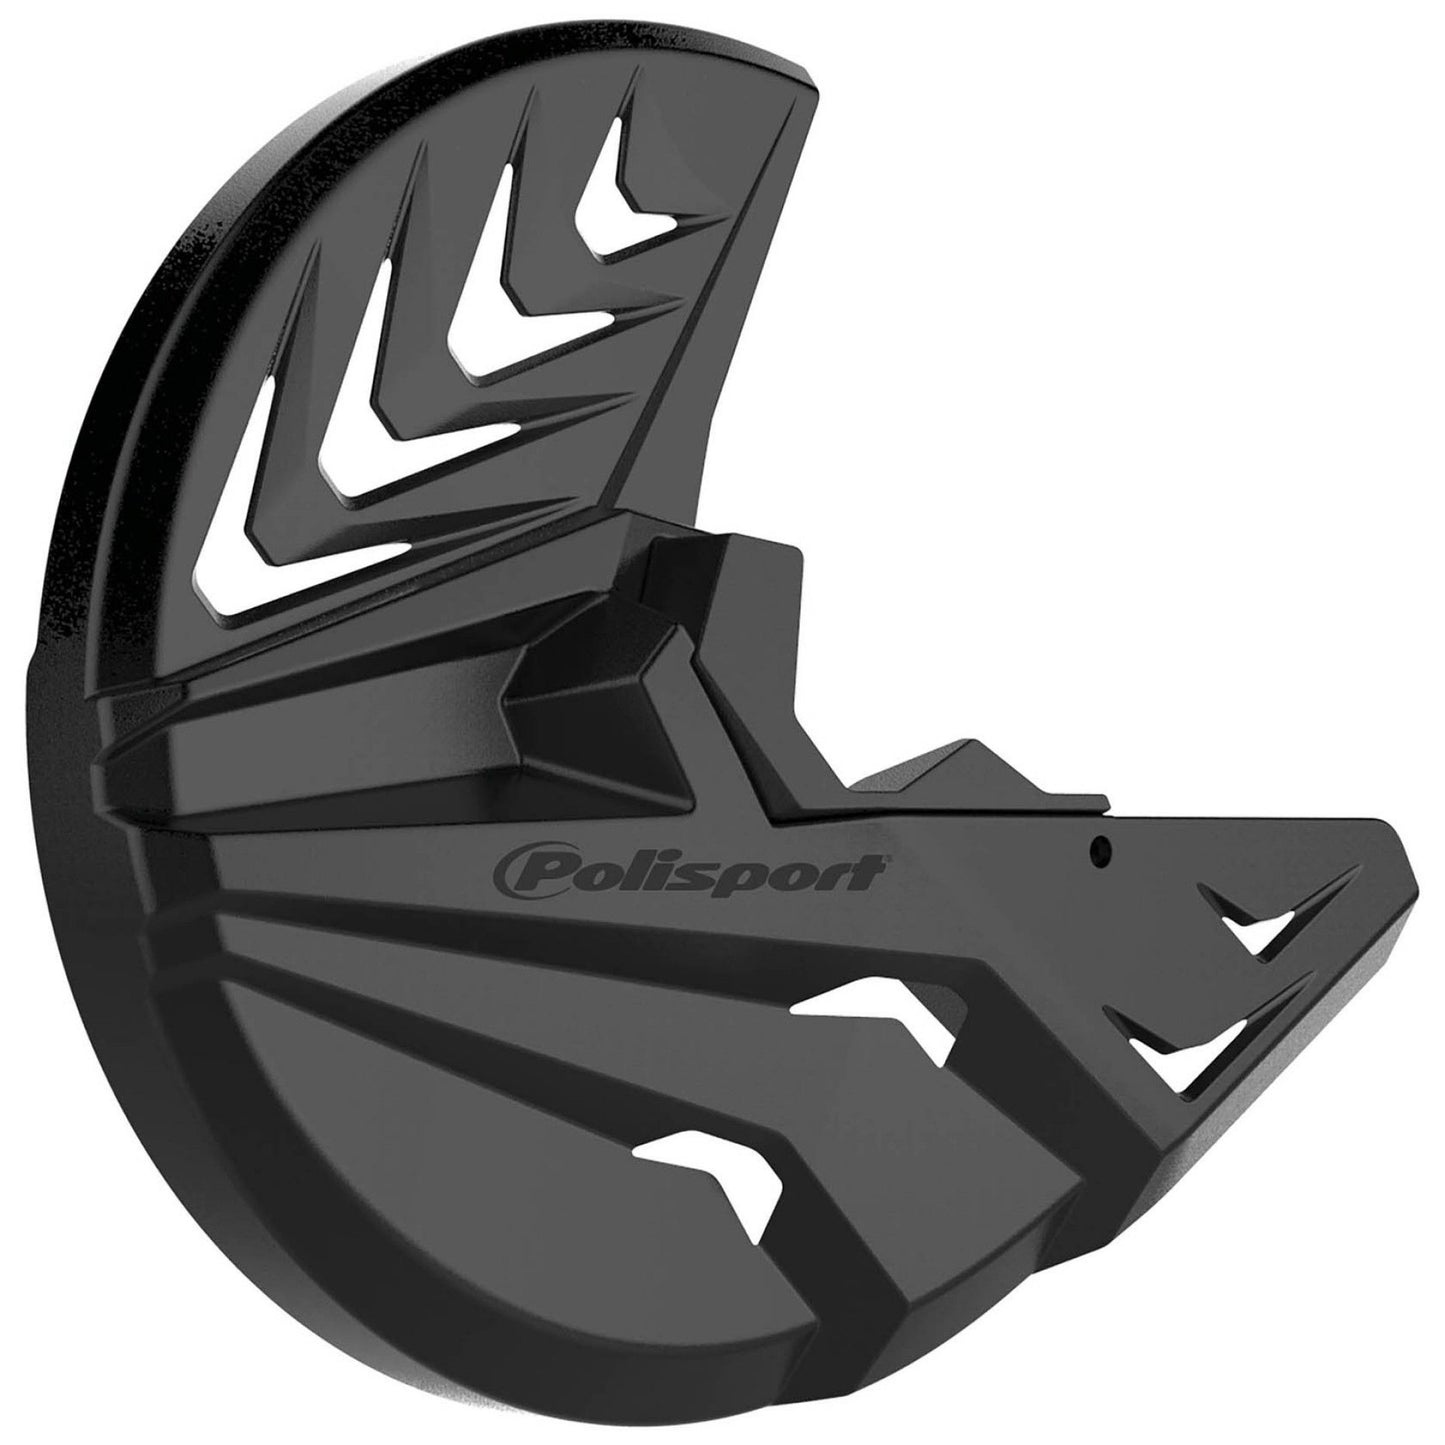 Polisport Yamaha Disc & Bottom Fork Protector - Black - EMD Online